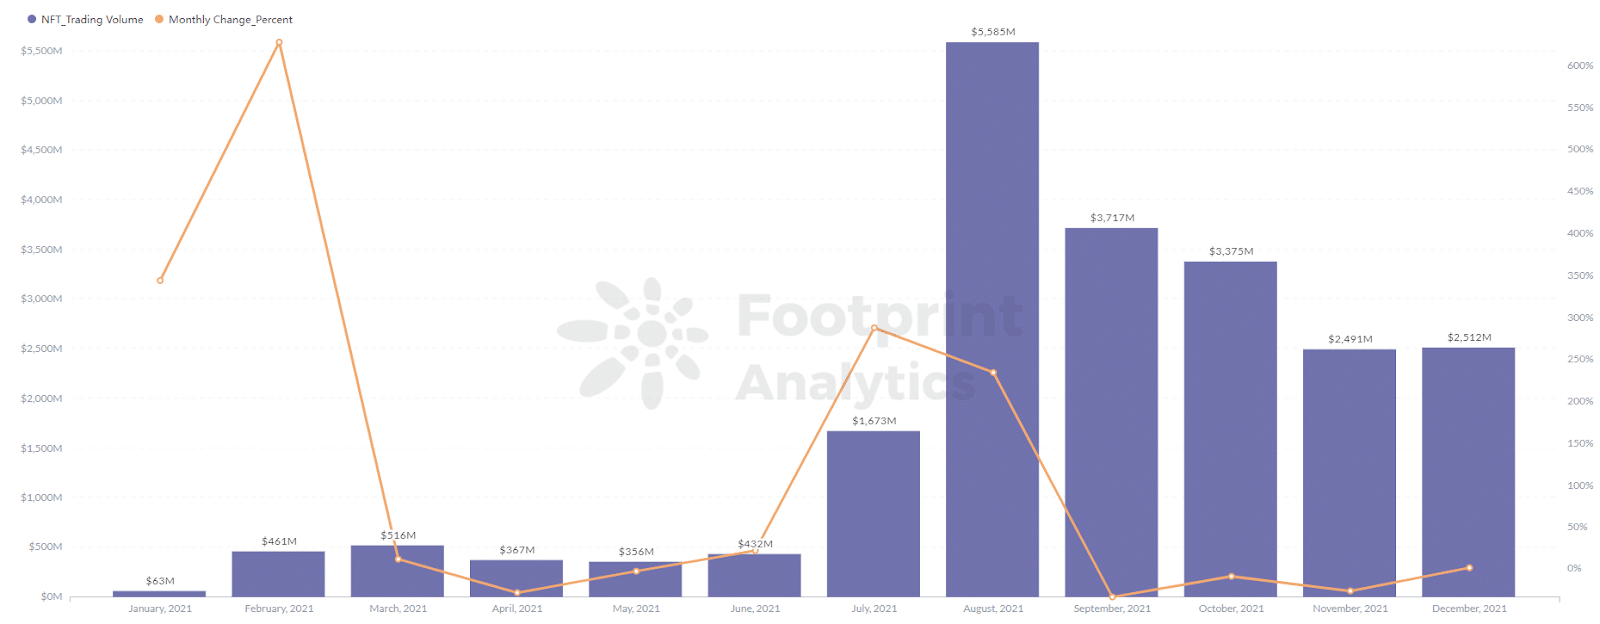 Footprint Analytics - NFT Projects' Trading Volume de negócios com um pico de 5,586 milhões em Agosto